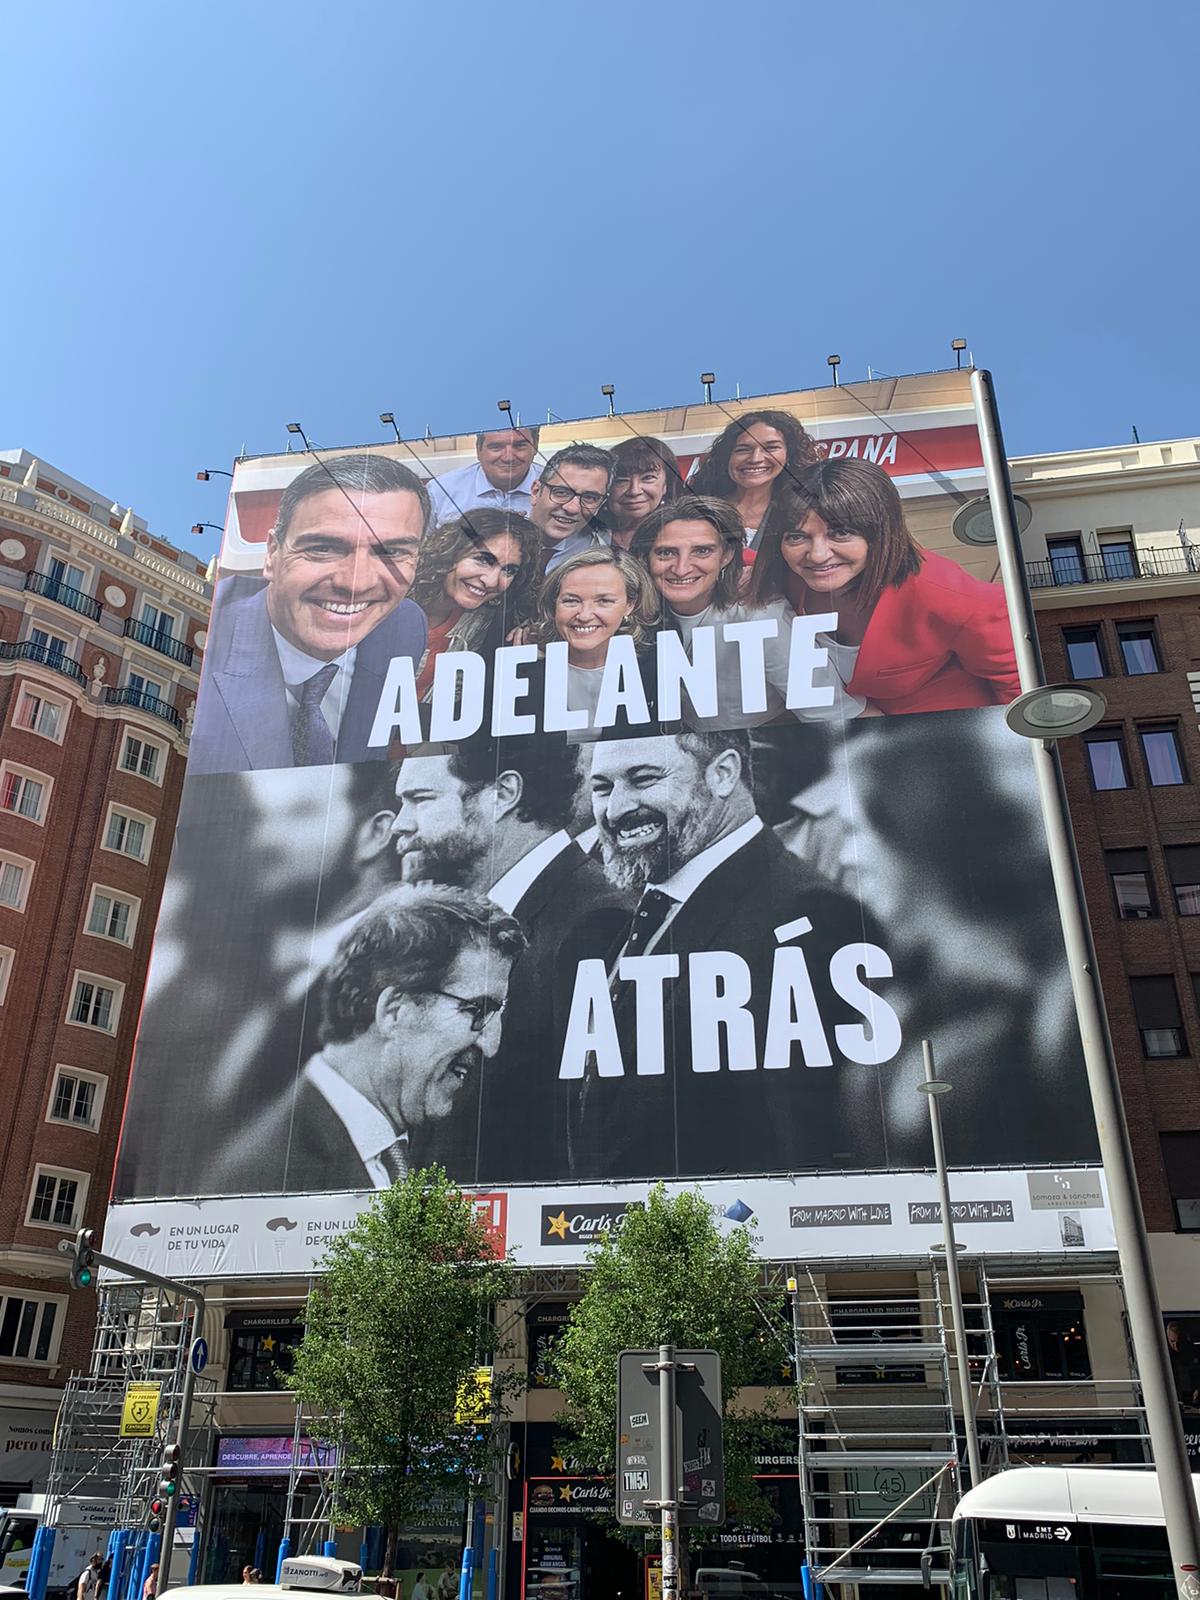 El PSOE despliega una enorme lona con dardo al PP y Vox